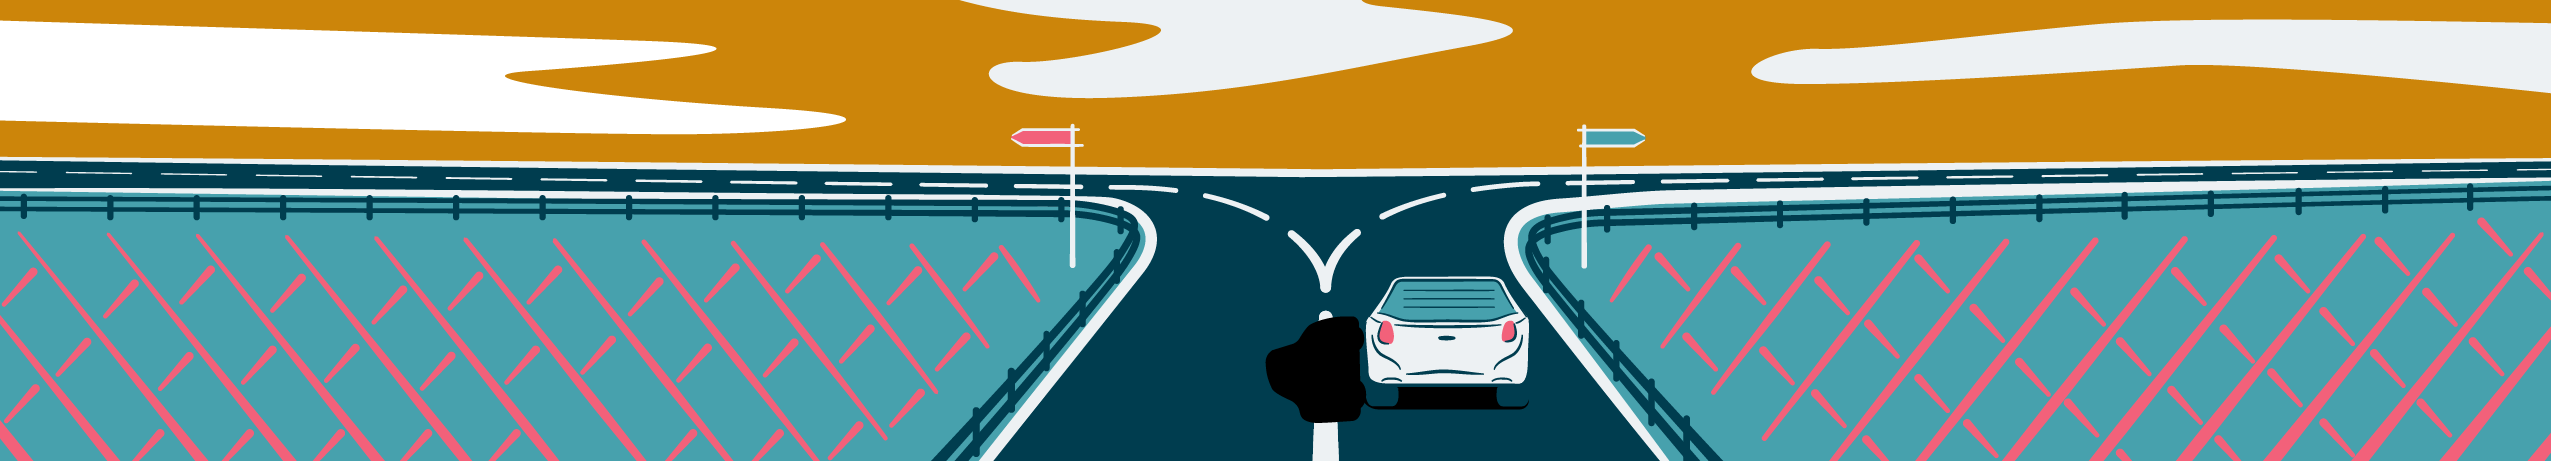 Illustration eines Autos, das auf eine Kreuzung zufährt, was auf Entwicklung und Veränderung hindeutet